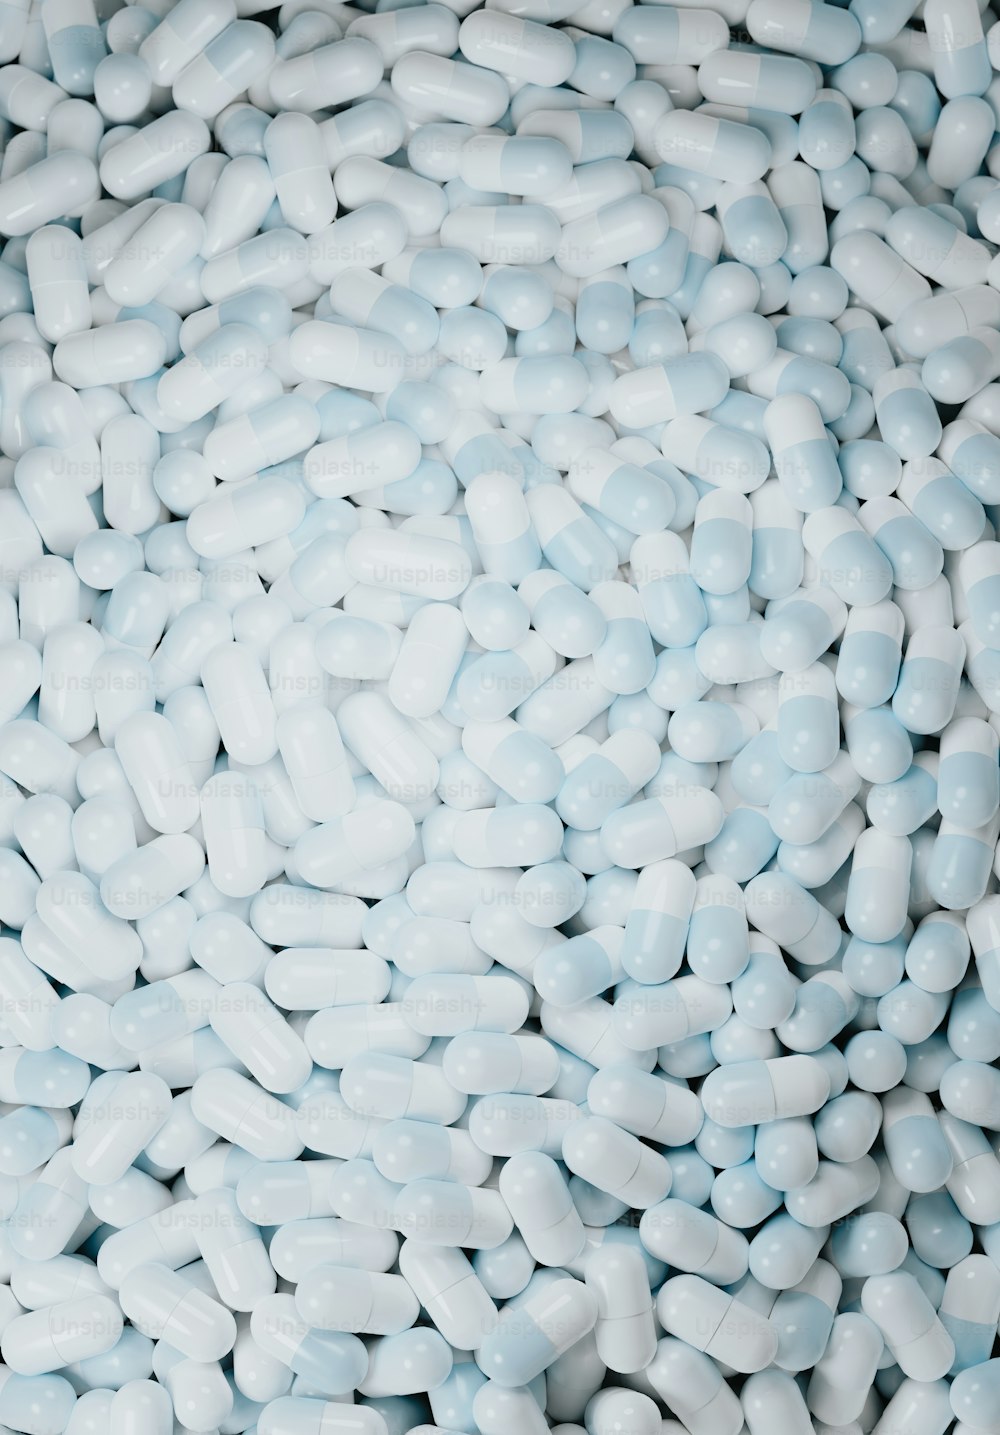 uma pilha de pílulas brancas sentadas em cima de uma mesa